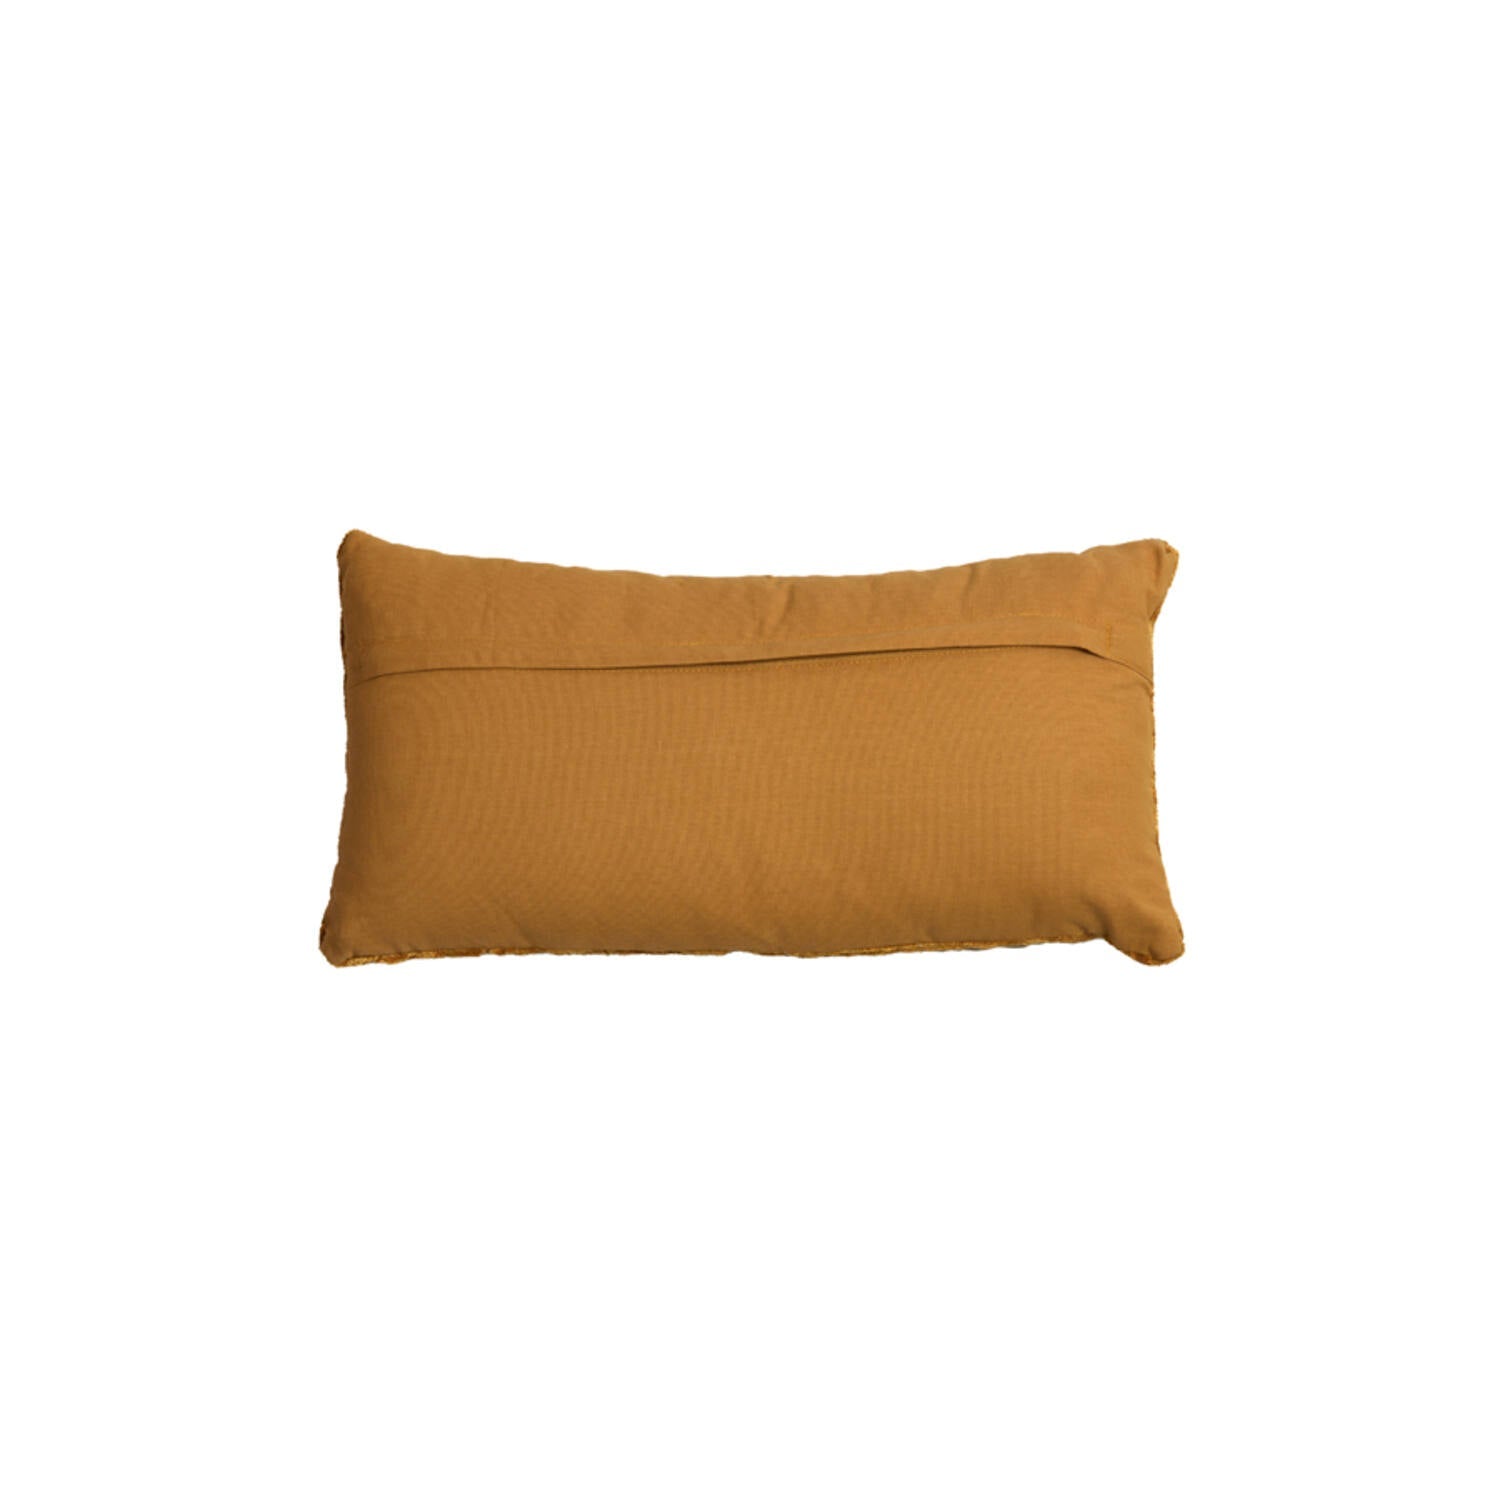 Ruhla Rectangle Cushion - Mustard Finish